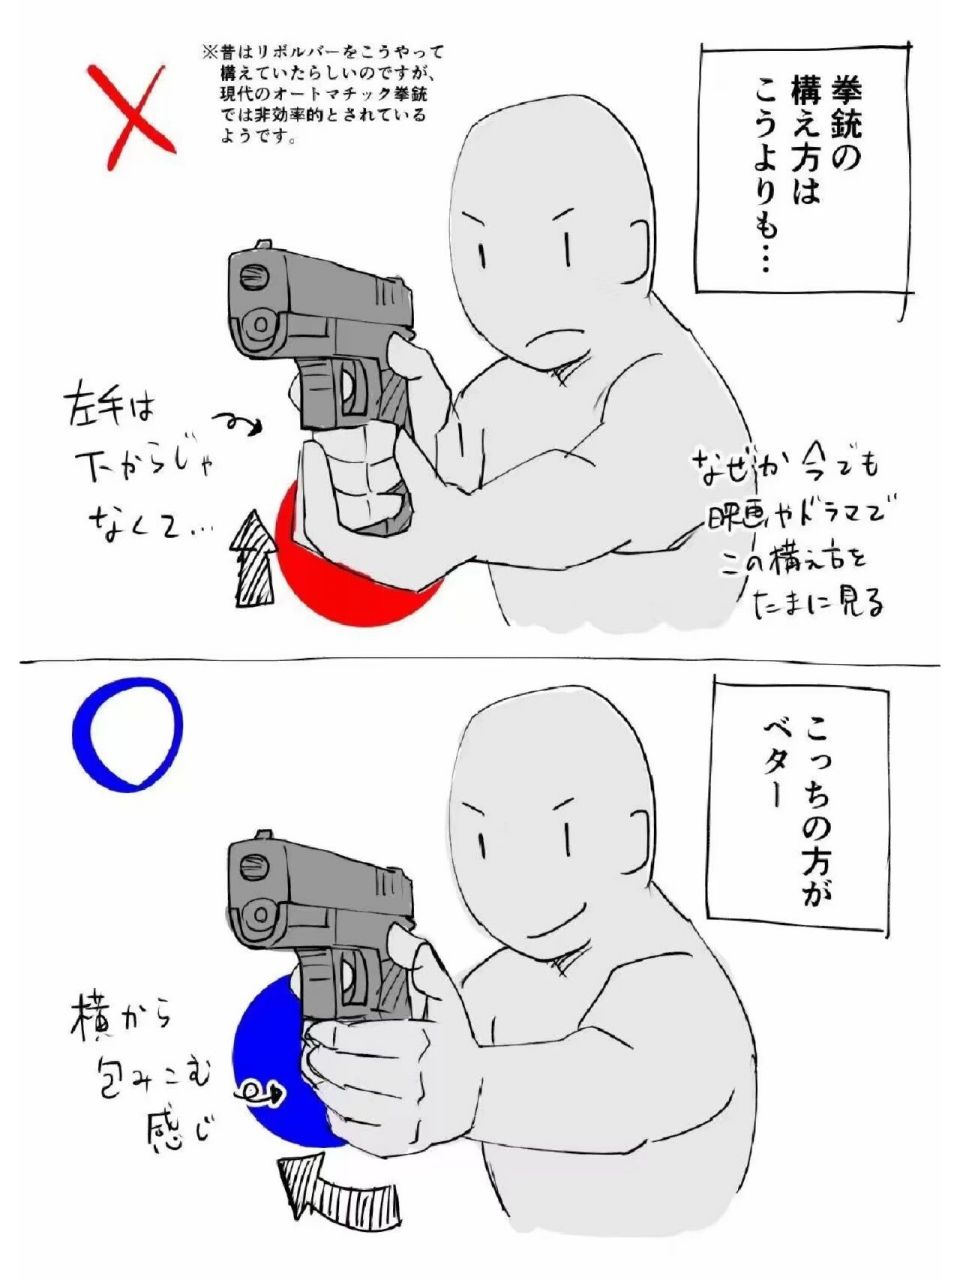 【绘画素材】抢手的正确姿势 枪画法大纠正!